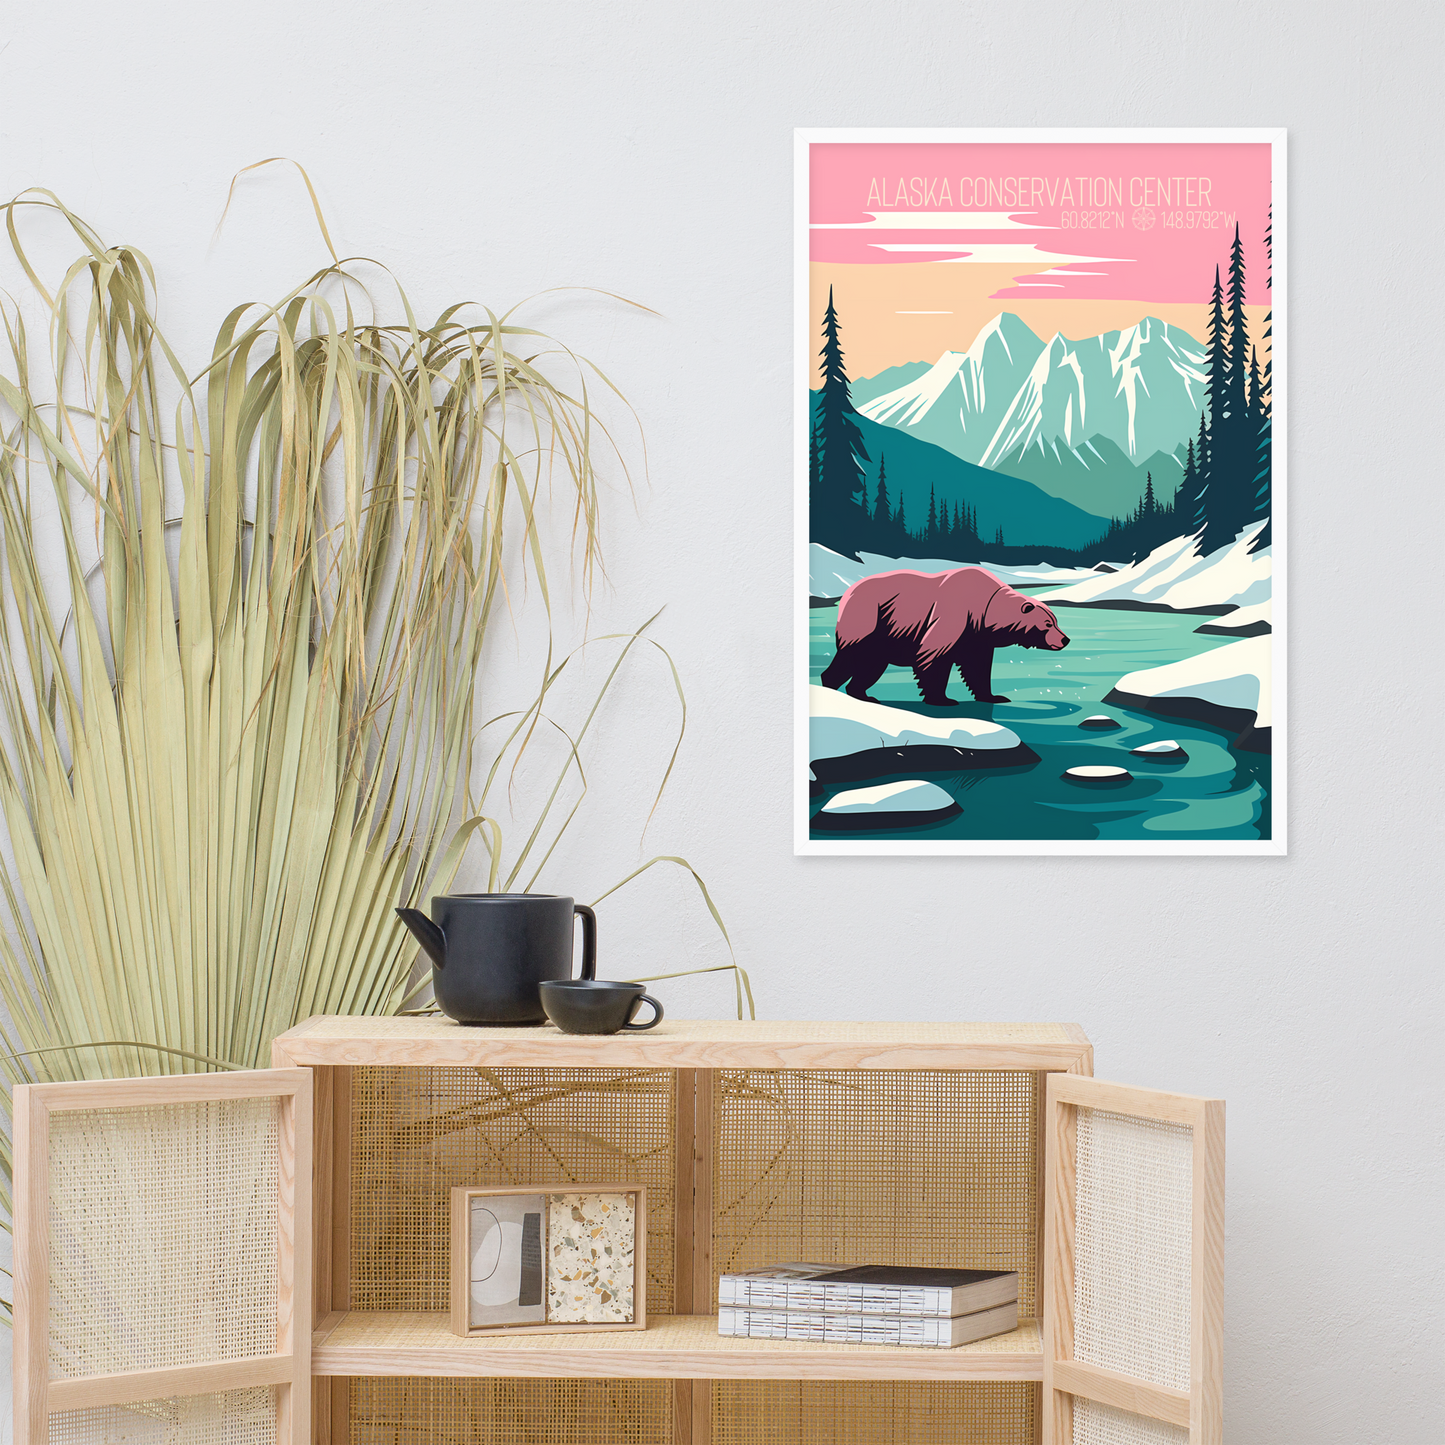 Alaska - Alaska Conservation Center - Bear (Framed poster)